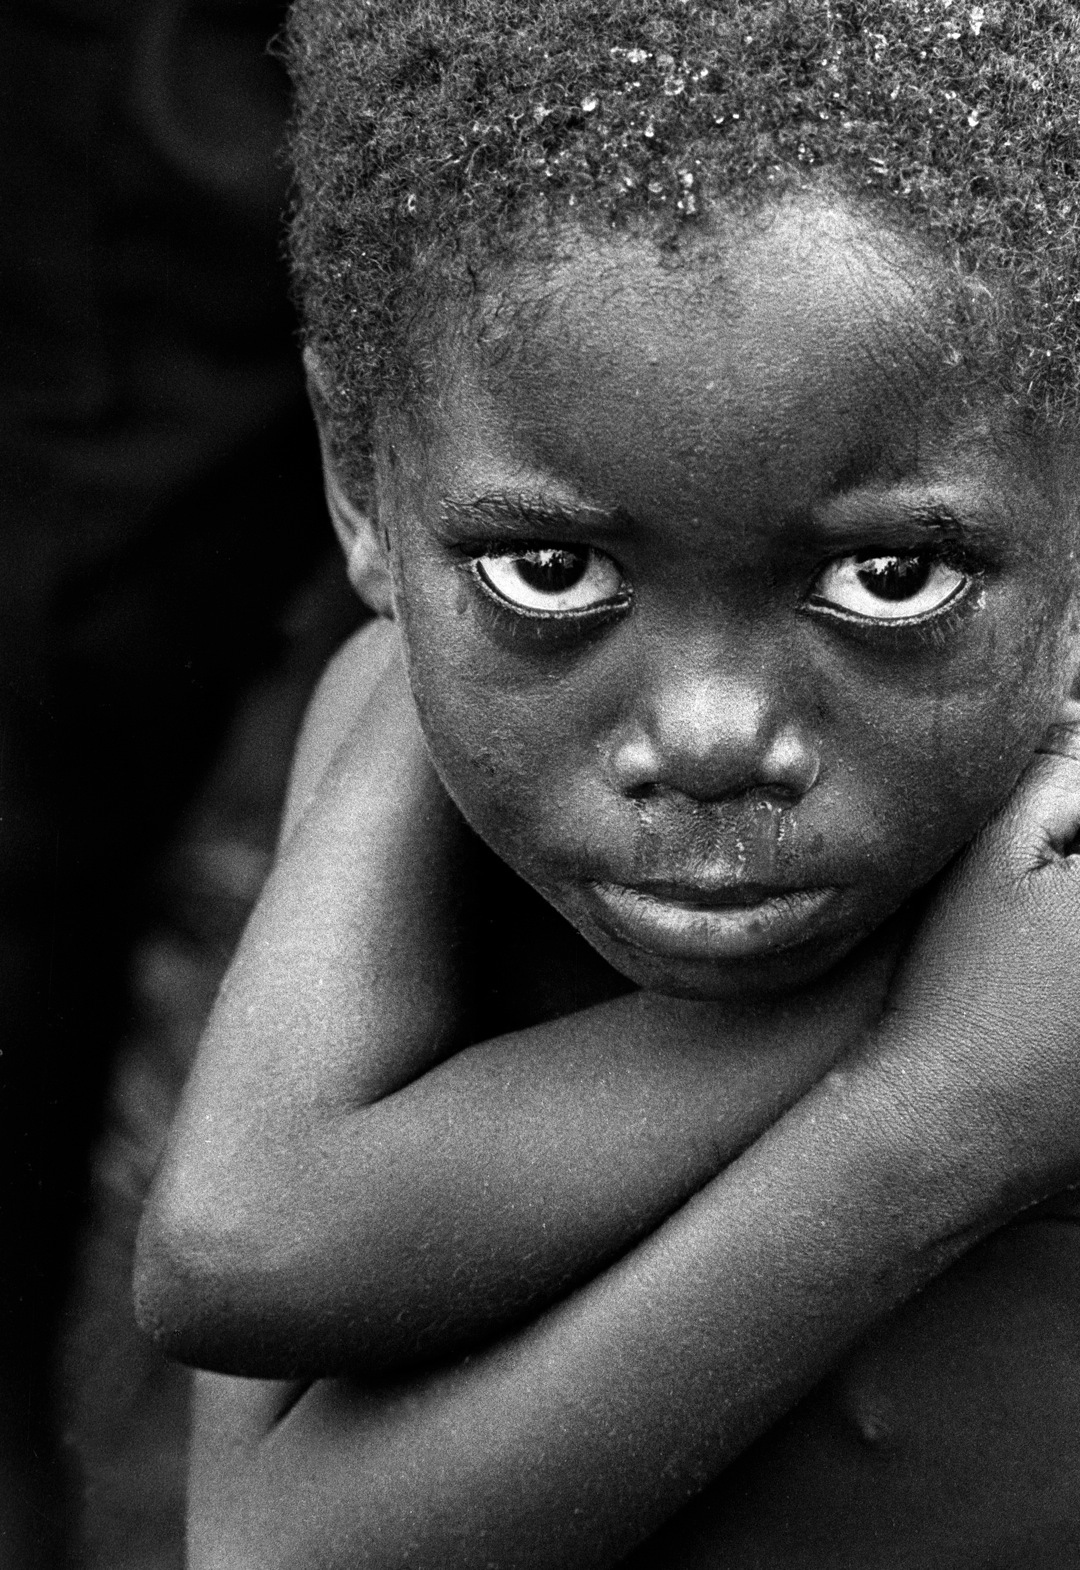 L'Afrique est, comme chaque année, victime d'une épidémie de méningite. L'épisode de 2009 avait été particulièrement meurtrier : 931 personnes avaient trouvé la mort au 11 mars. En 2012, les chiffres sont un peu moins élevés. © Daveblum, Fodopédia, cc by nc nd 2.0